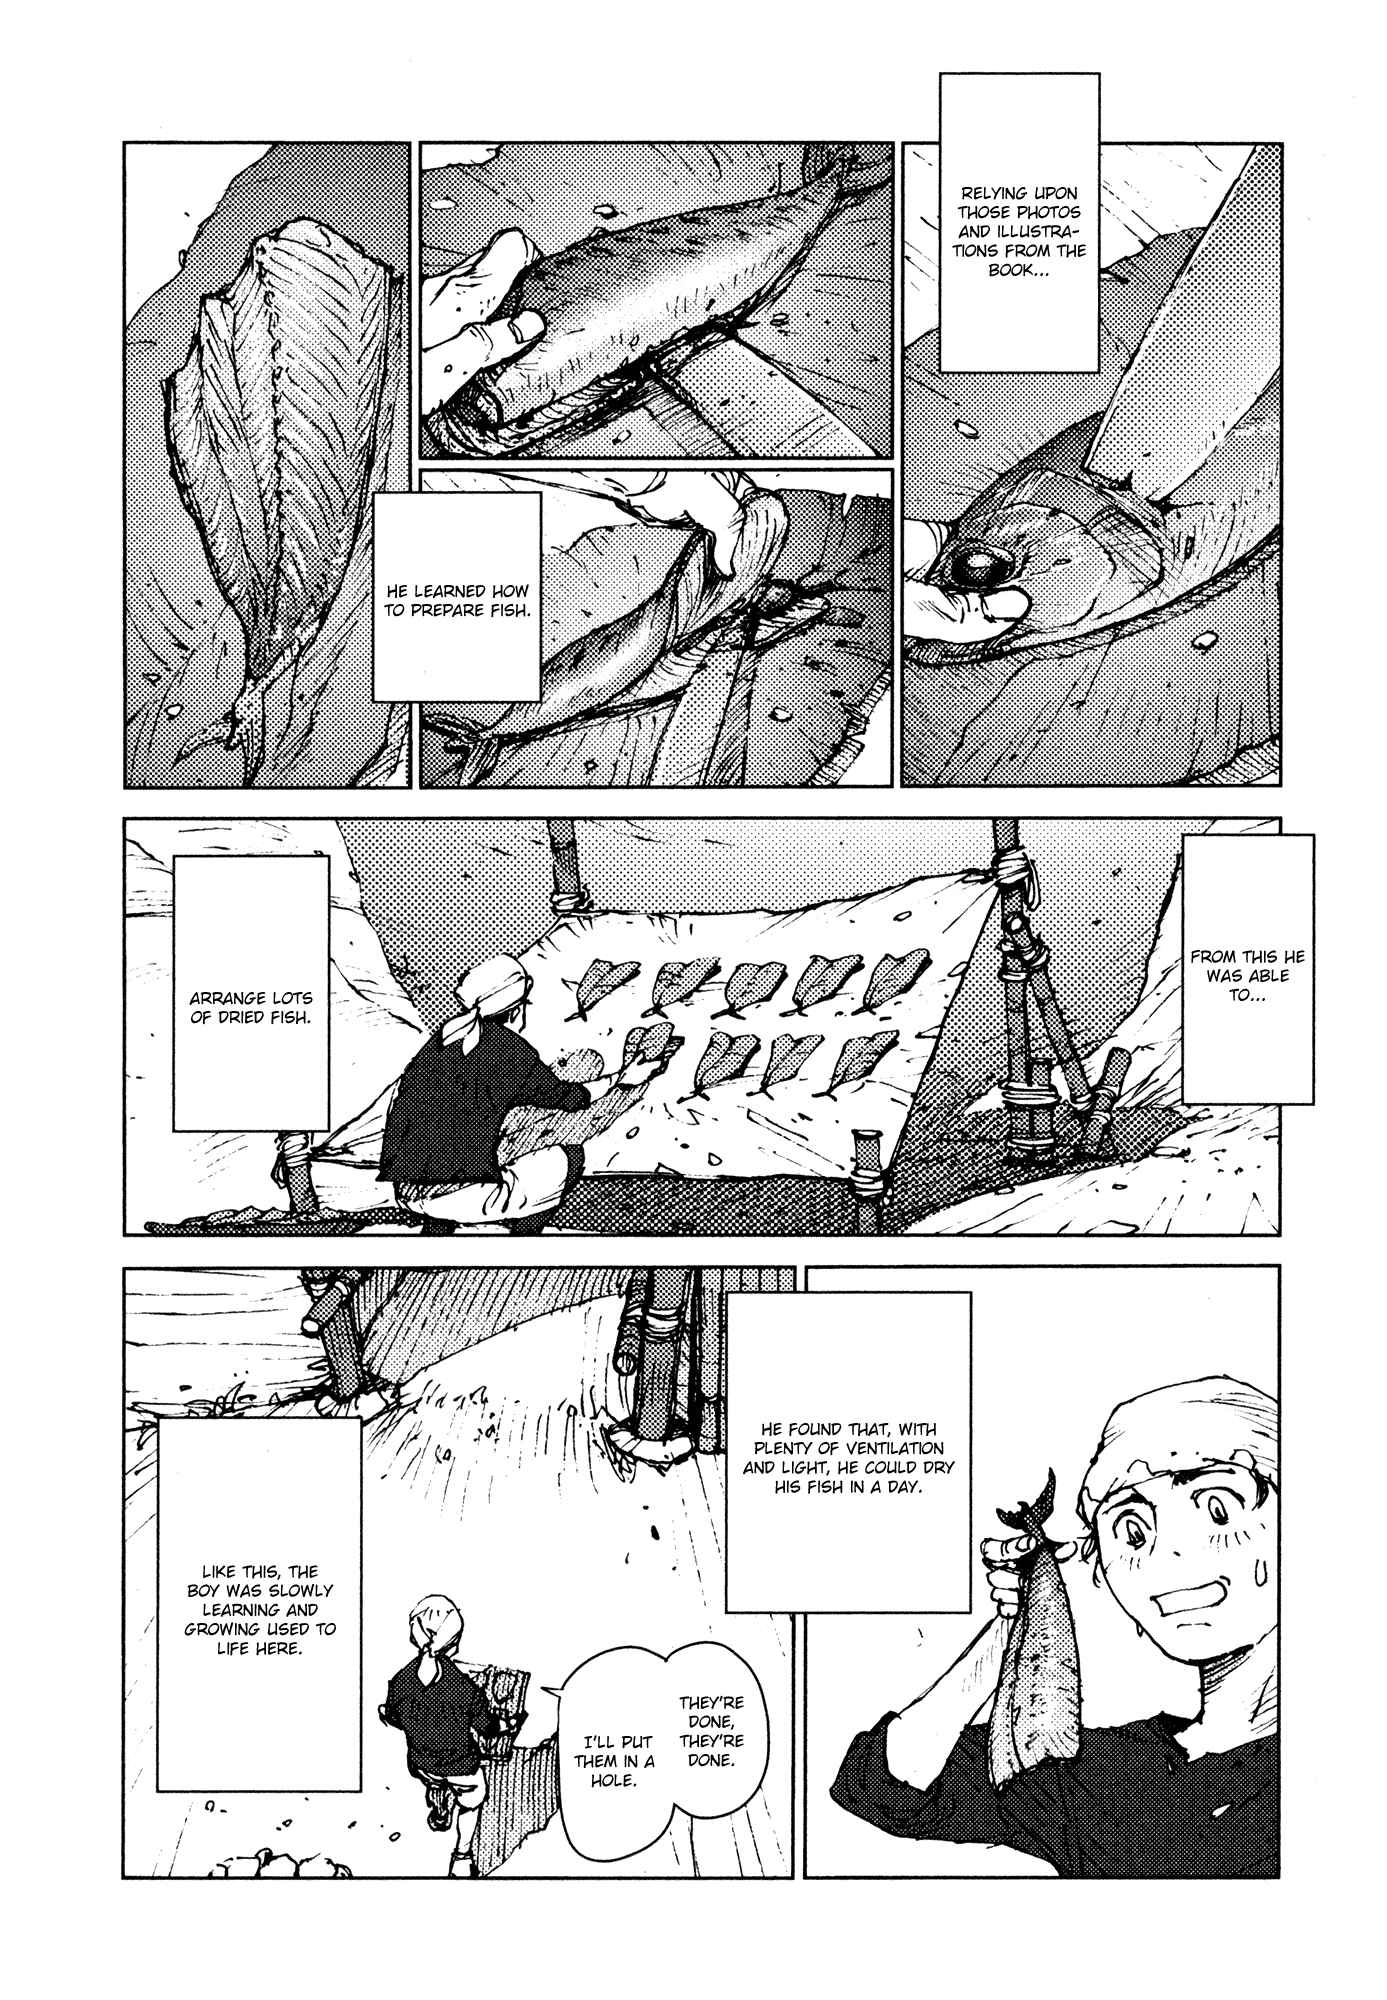 Survival: Shounen S no Kiroku Vol.1 Ch.11